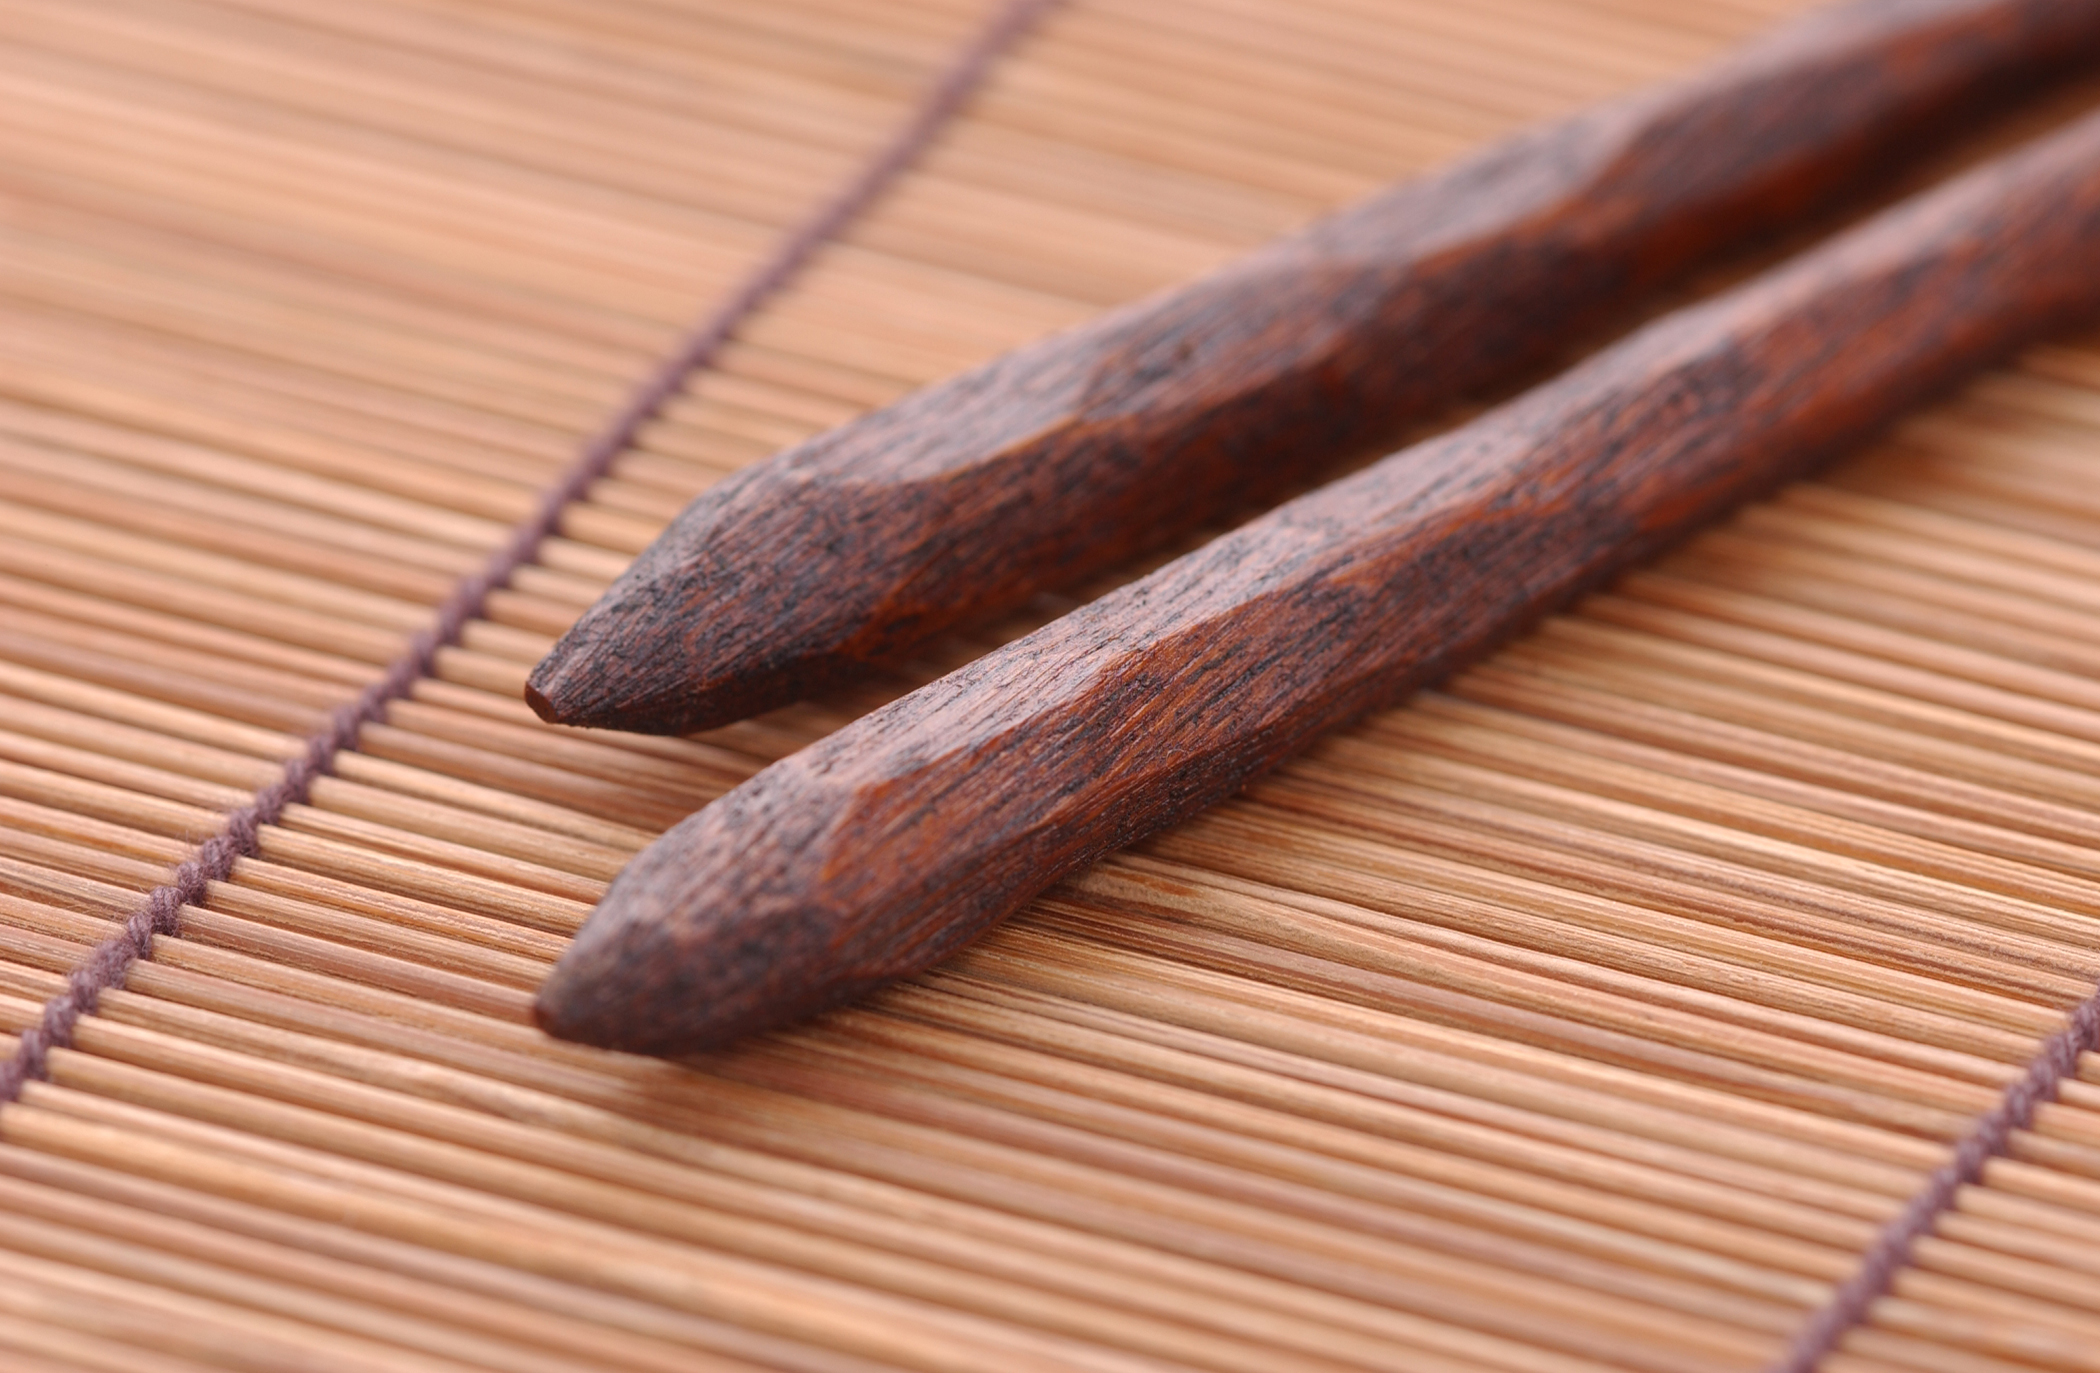 Details about   Handmade Japanese Natural Rosewood Chopsticks Printed Wooden Chopsticks 